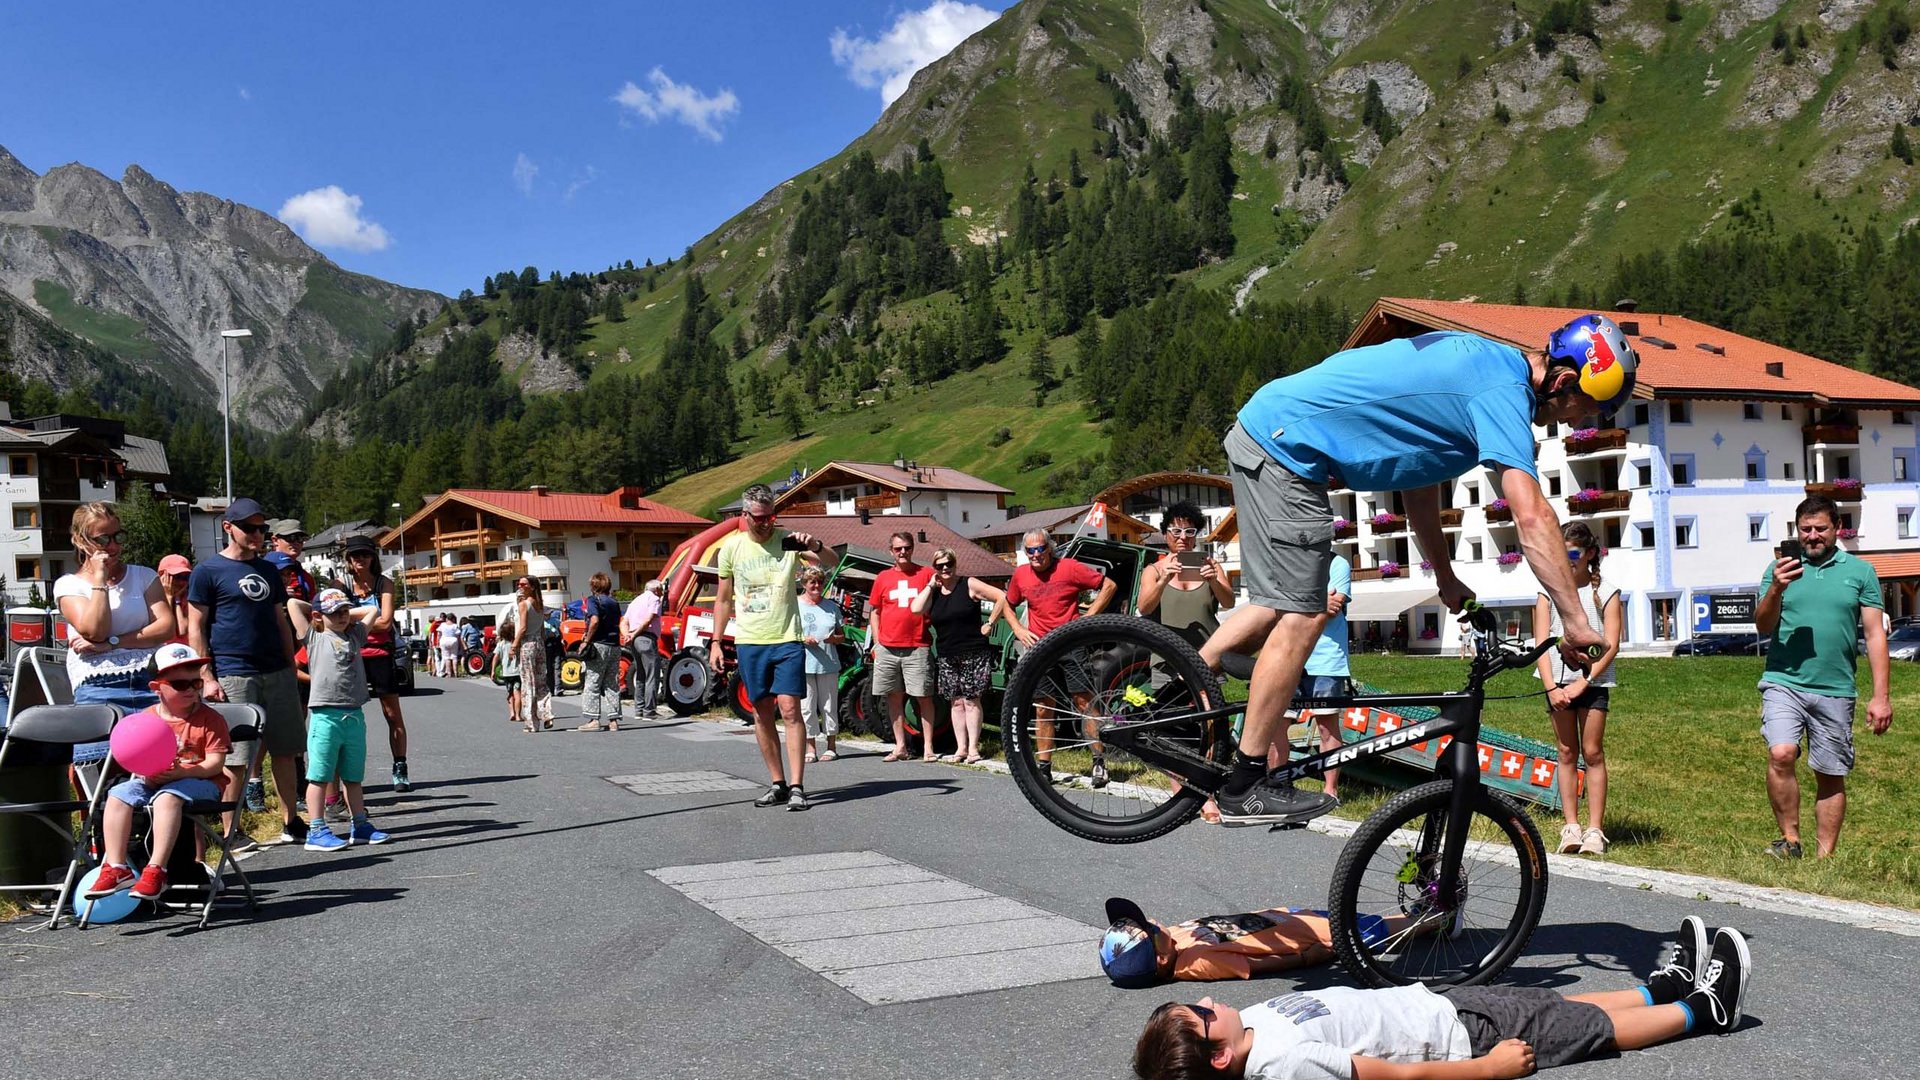 Events around your hotel for mountain biking in Switzerland